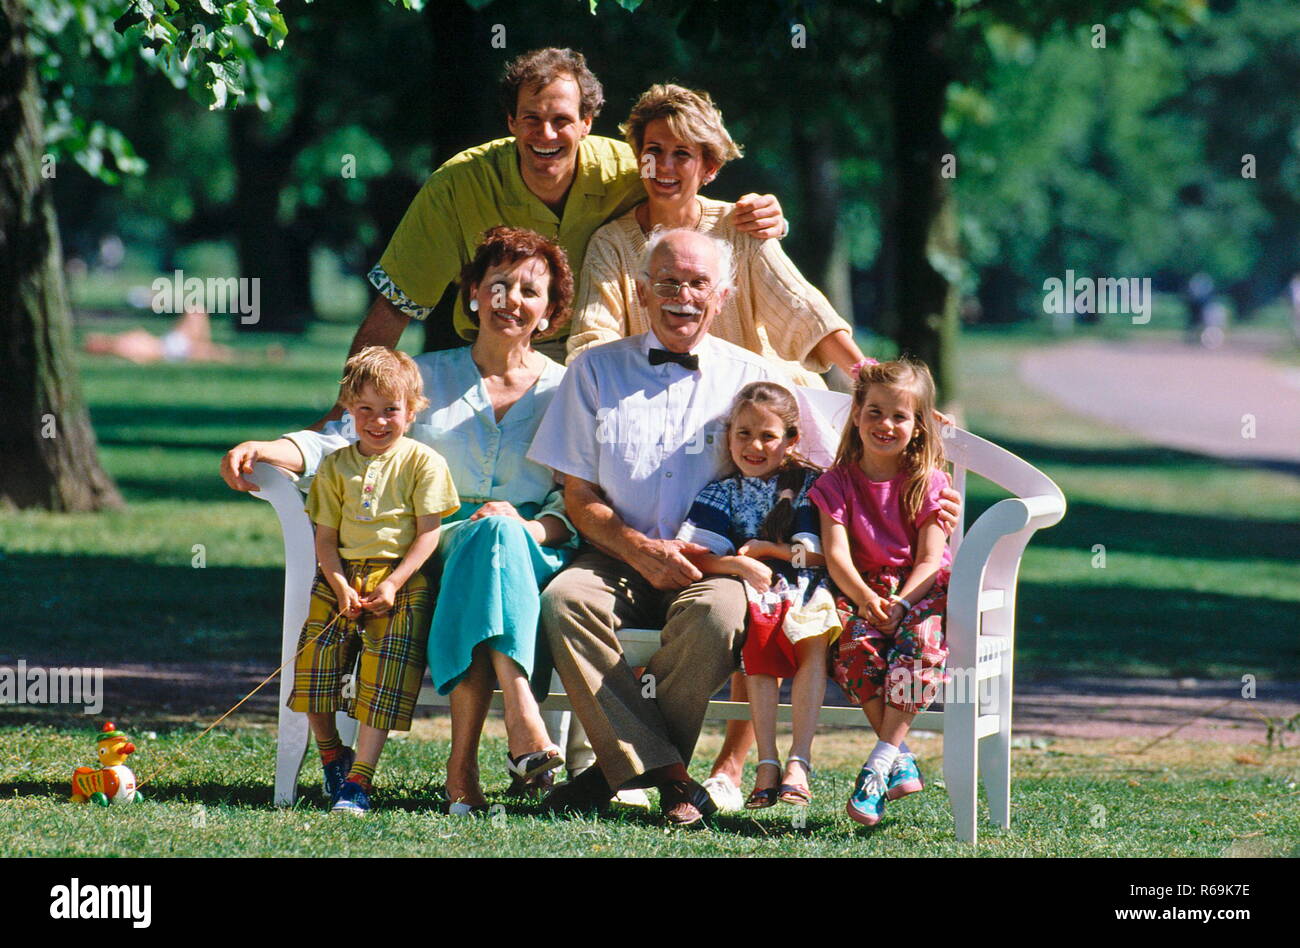 Portrait, Familie sitzt auf einer Bank im Park, 7 Personen, 3 Generationen, Eltern, Grosseltern und 3 Kinder, 2 Maedchen, 1 Junge Stock Photo